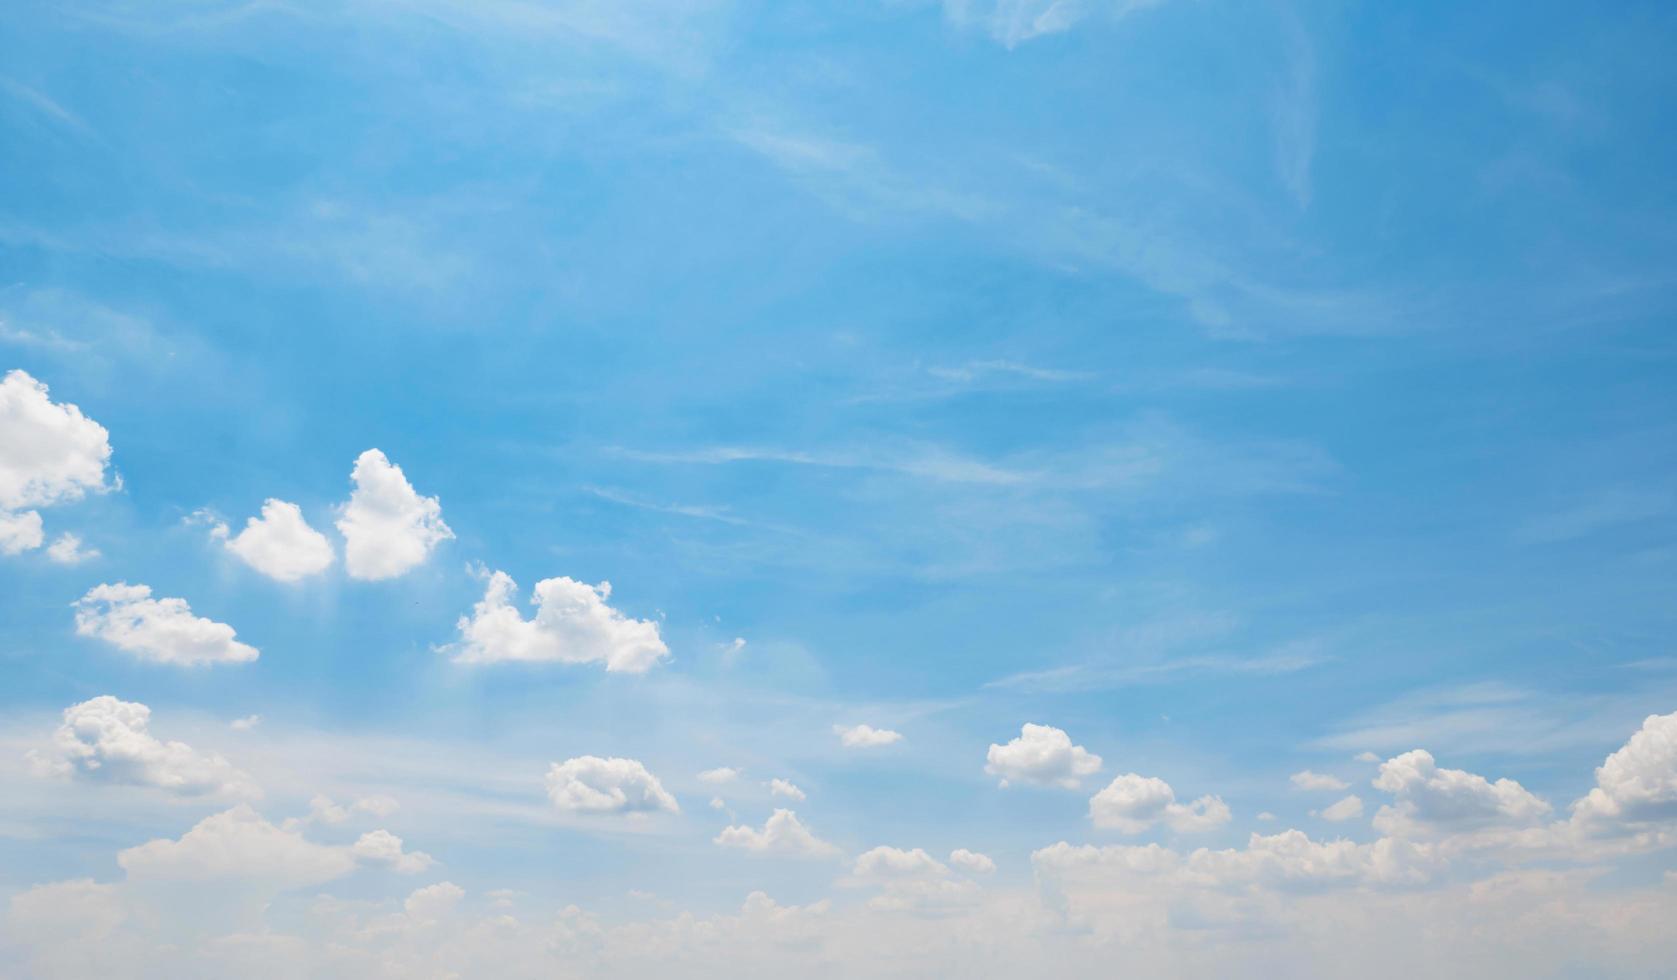 blauw lucht met wit pluizig wolk, landschap achtergrond foto